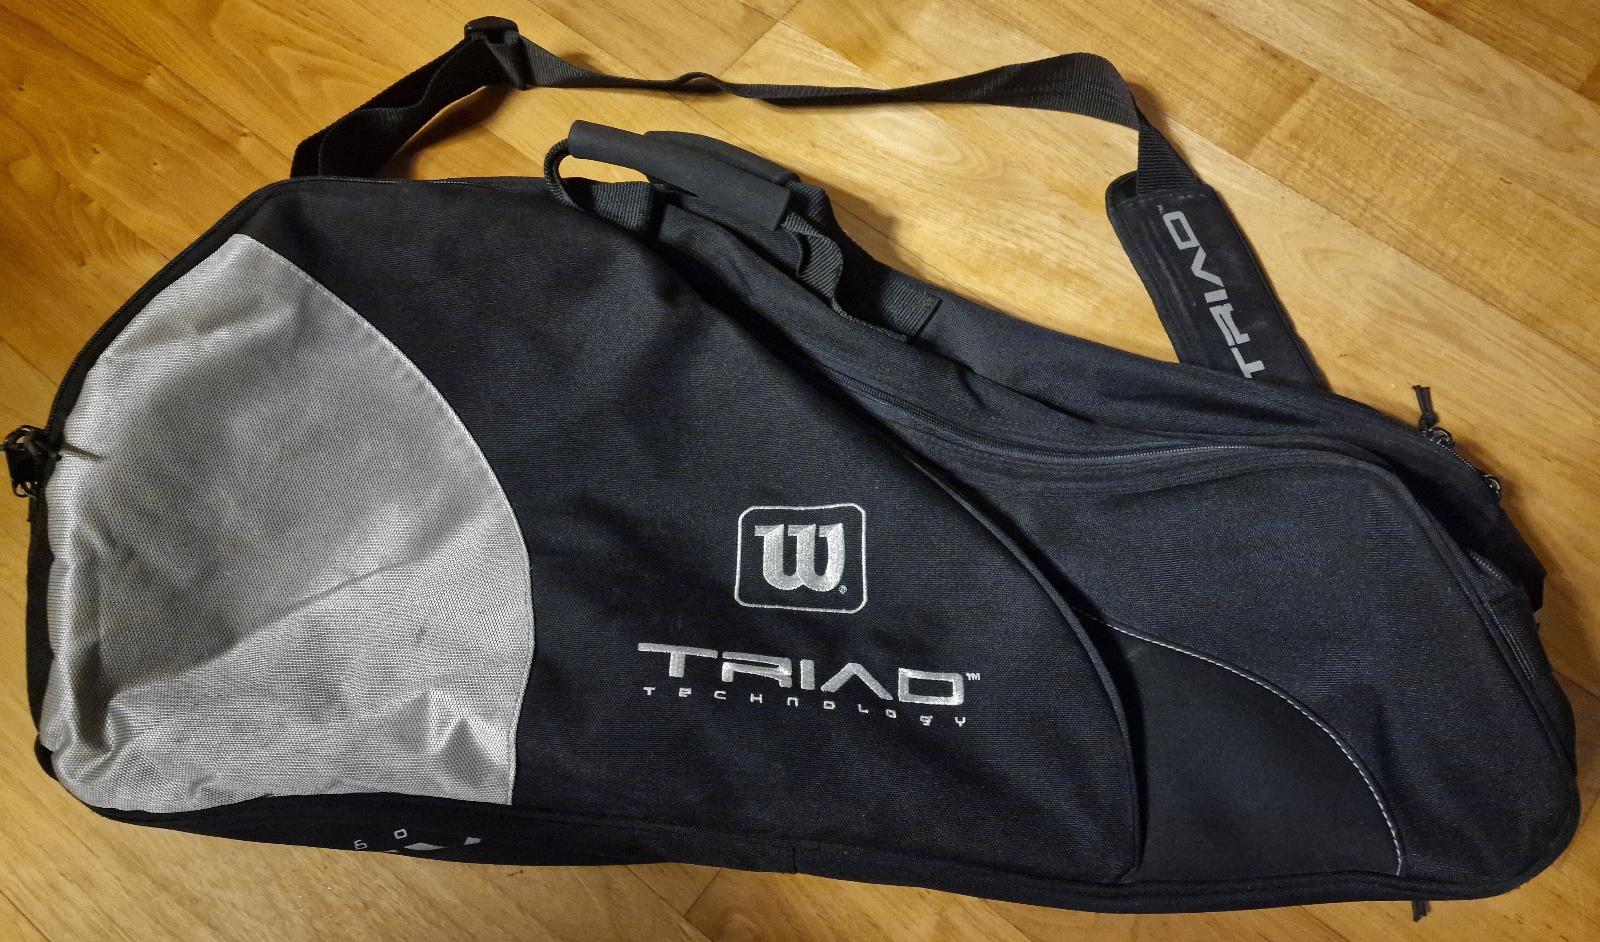 Tenisová taška, vrátane púzdra na rakete - Vybavenie na tenis, squash, bedminton